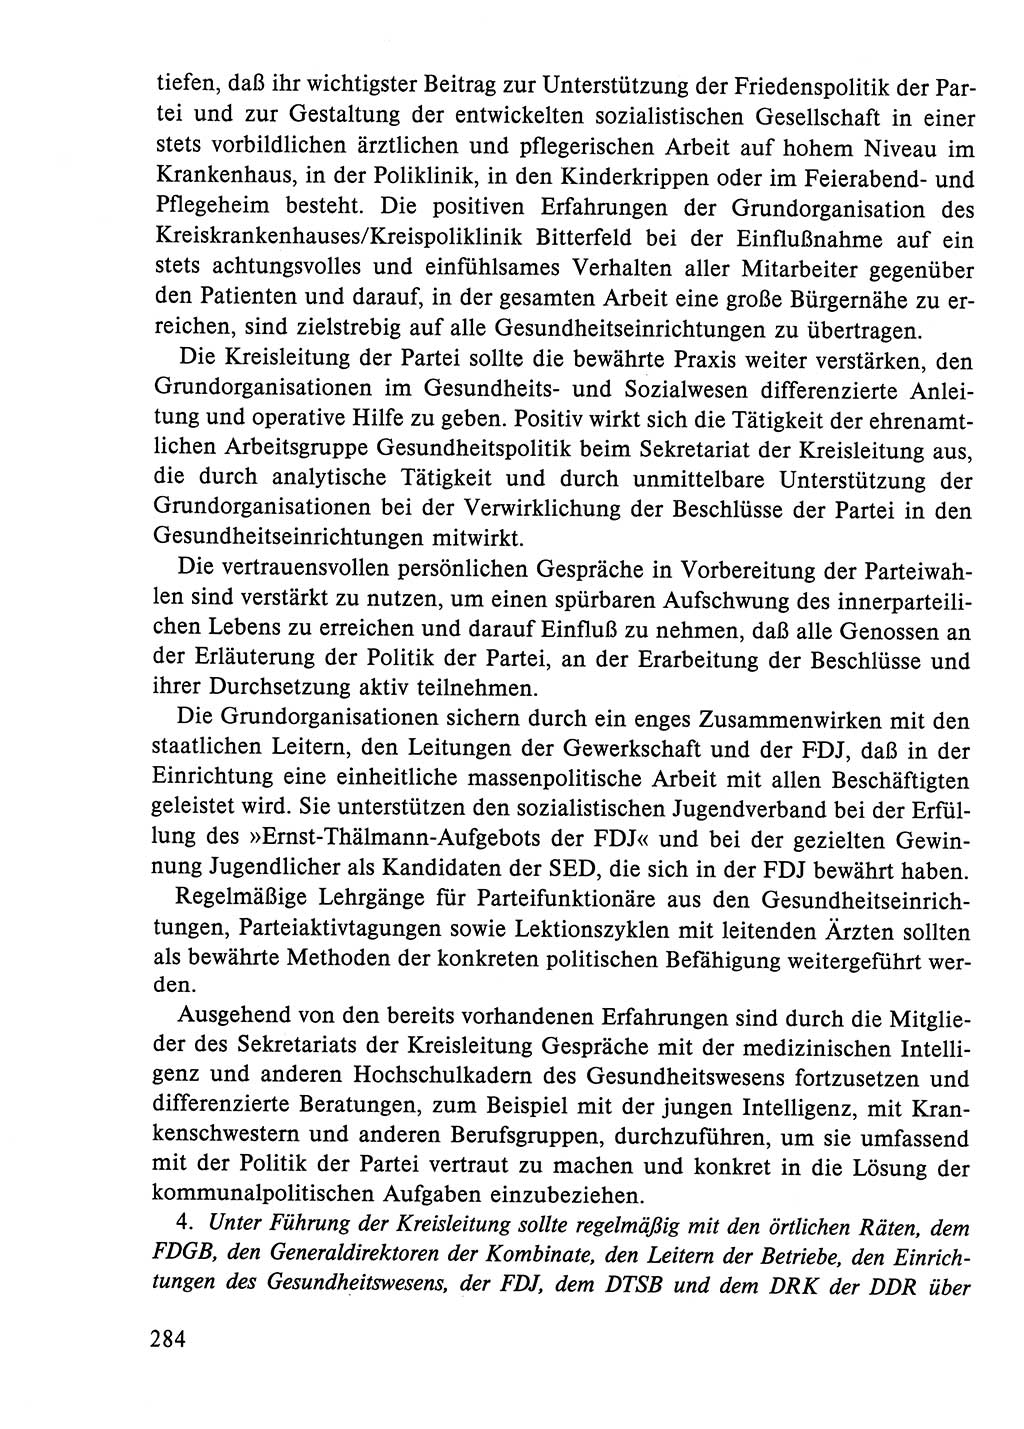 Dokumente der Sozialistischen Einheitspartei Deutschlands (SED) [Deutsche Demokratische Republik (DDR)] 1984-1985, Seite 143 (Dok. SED DDR 1984-1985, S. 143)